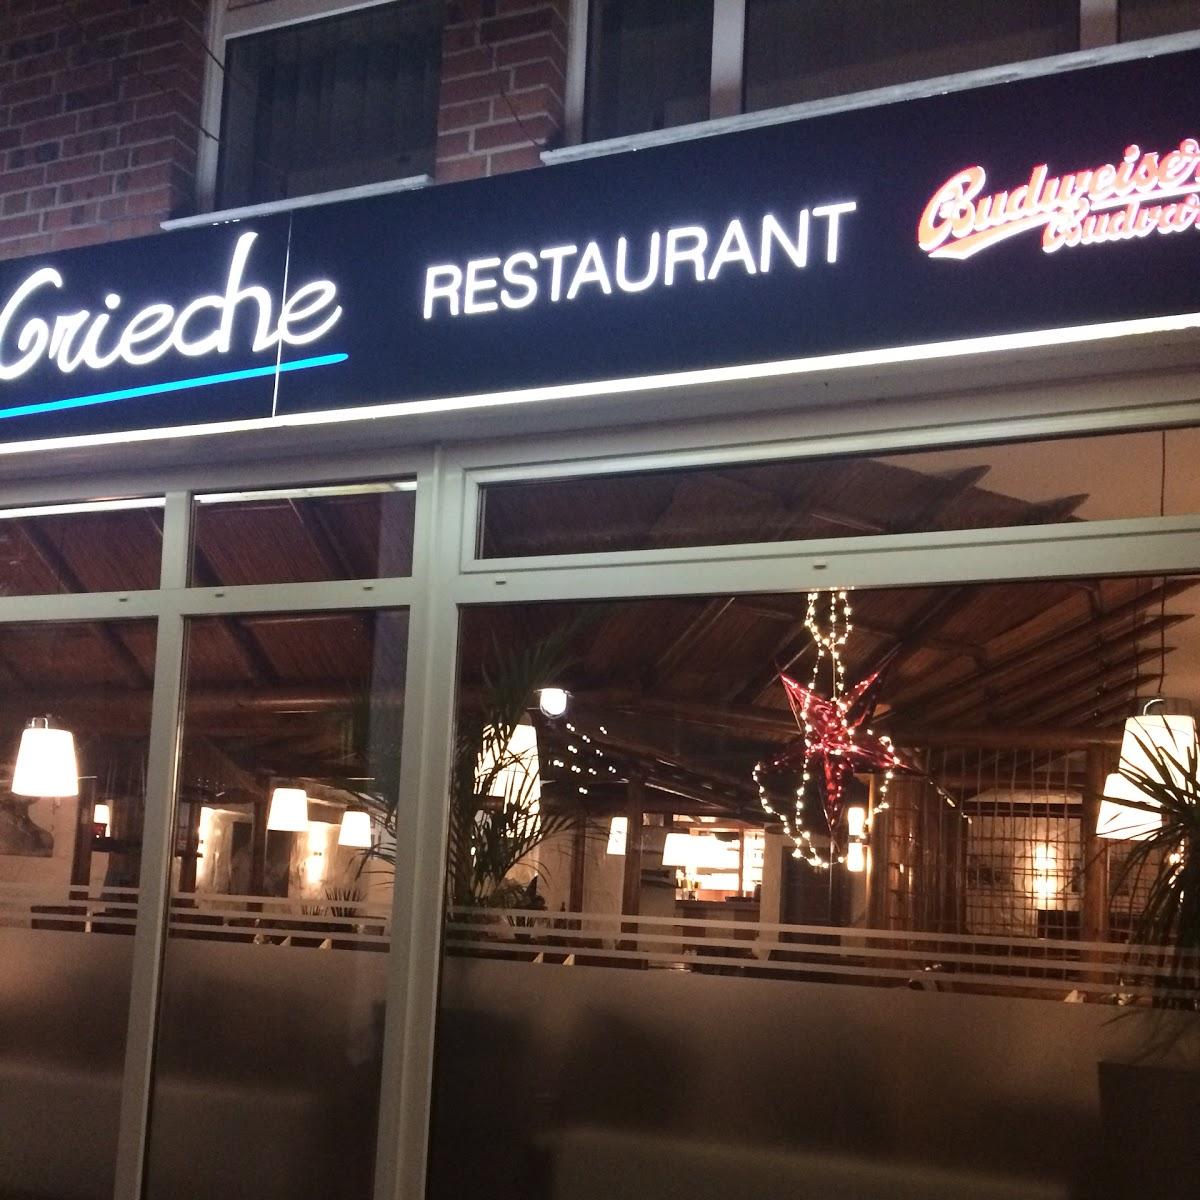 Restaurant "Der Grieche" in Wegberg